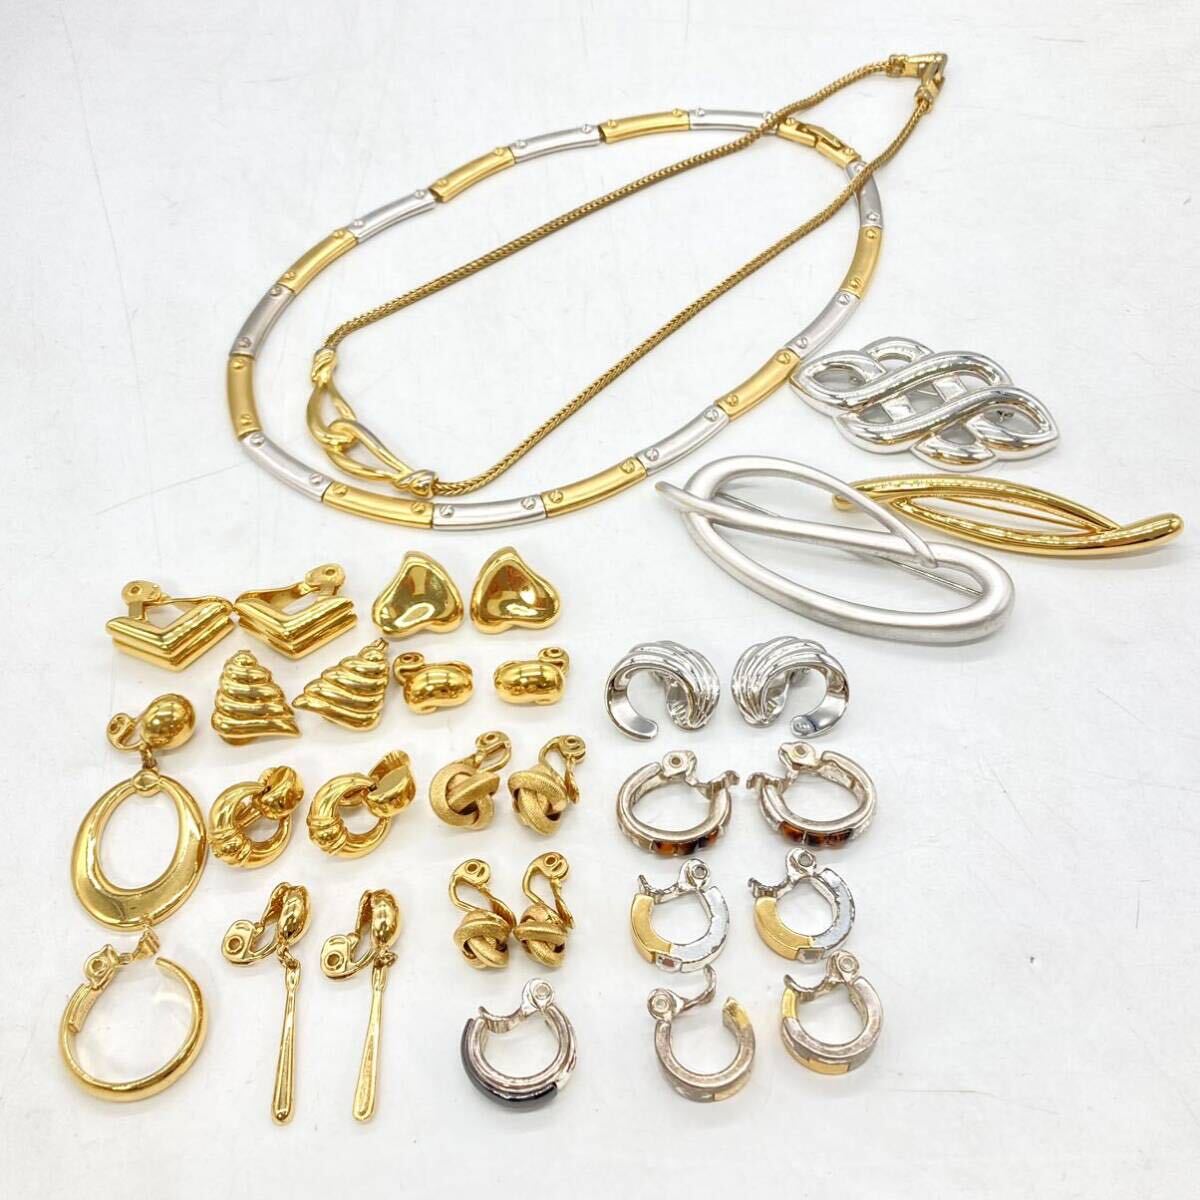 ■MONET(モネ)アクセサリー20点おまとめ■a重量約217g ゴールドカラー monet earring broach necklace jewelry accessory CE0 の画像1